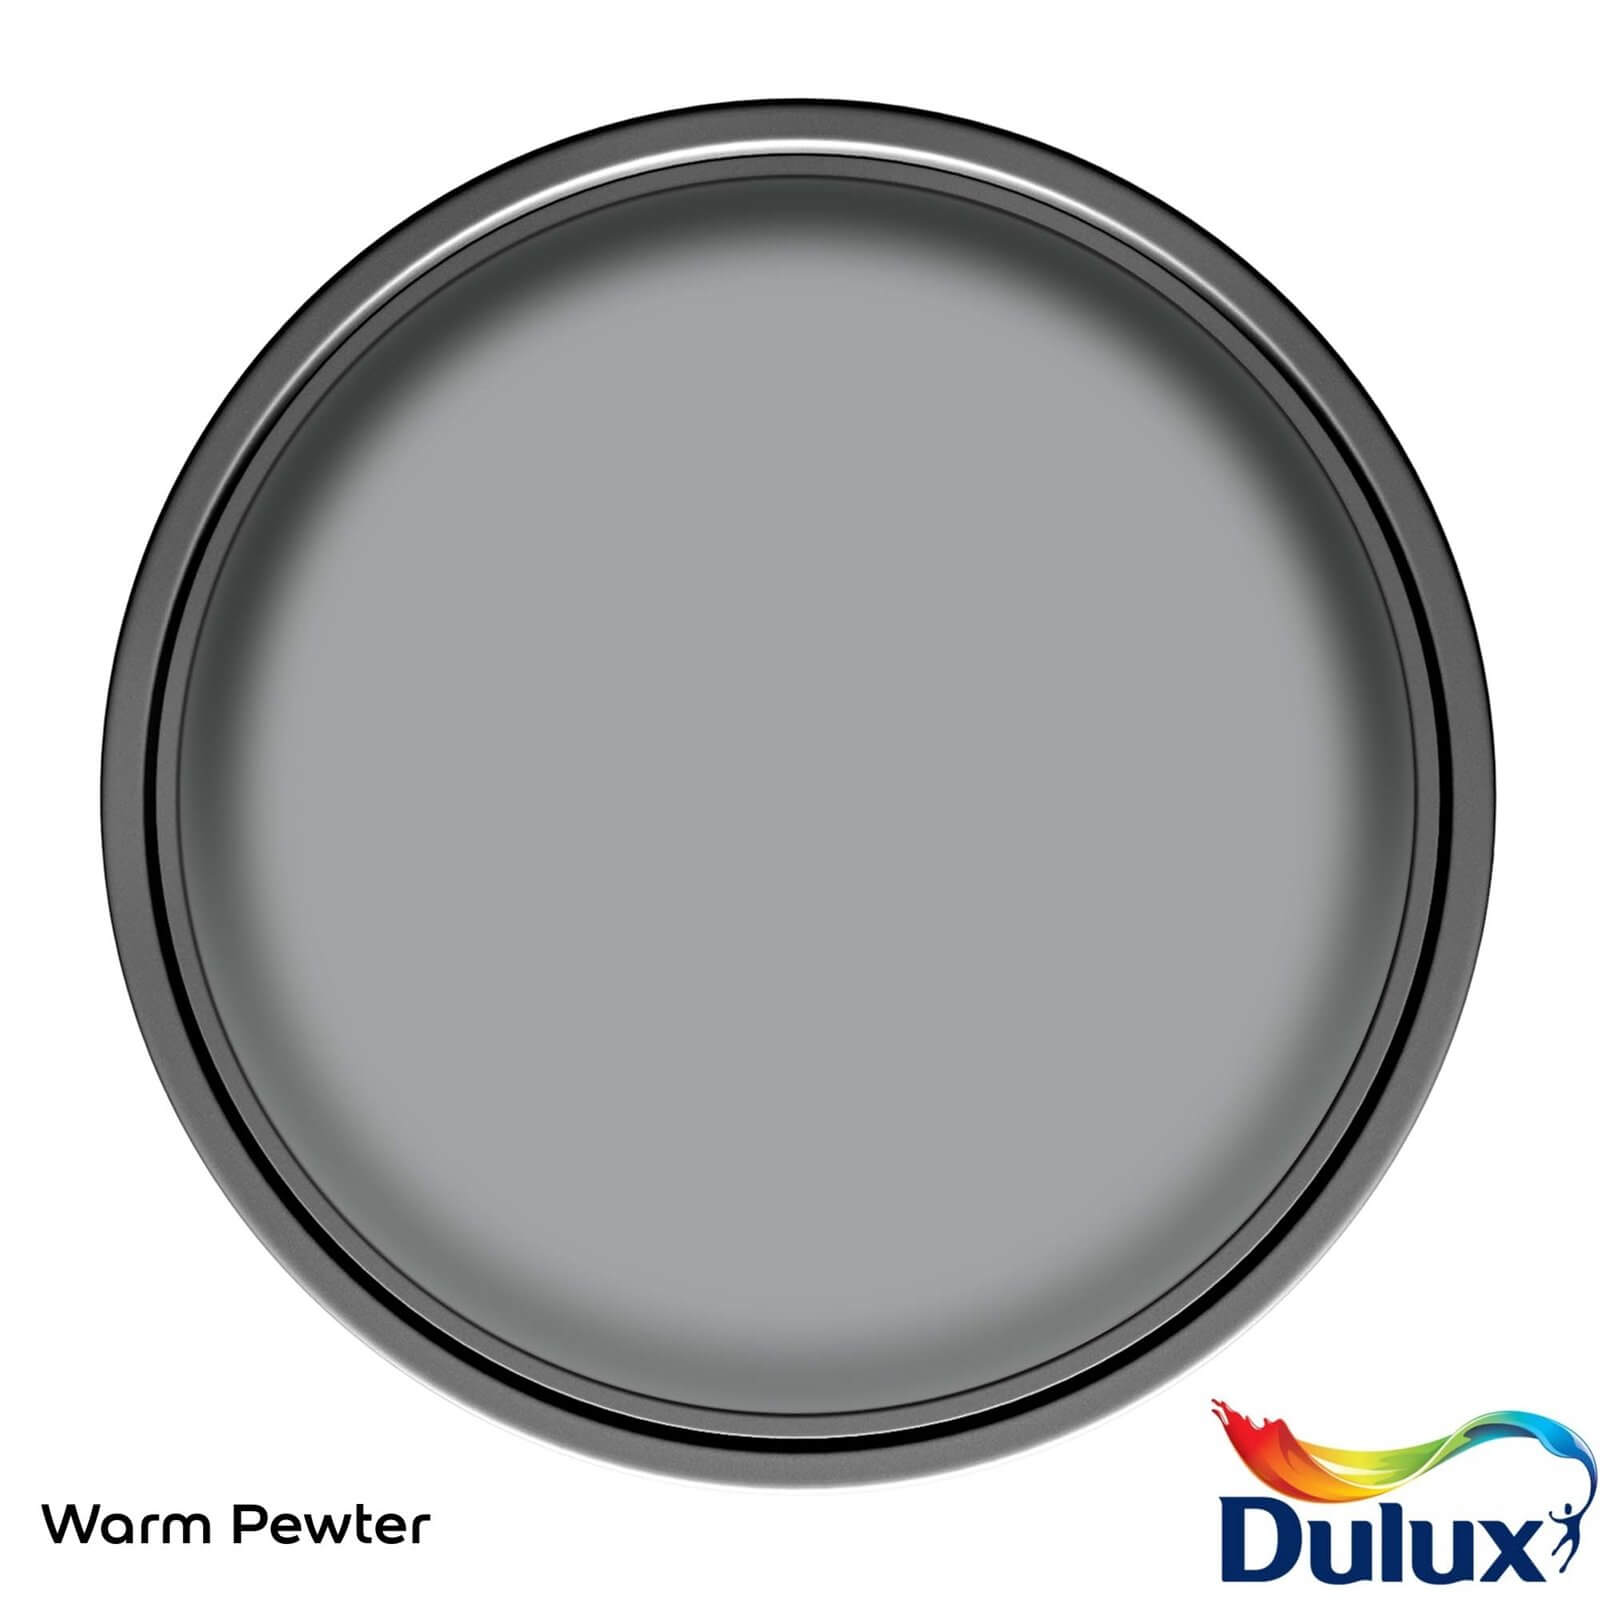 Dulux Easycare Washable & Tough Matt Paint Warm Pewter - 5L